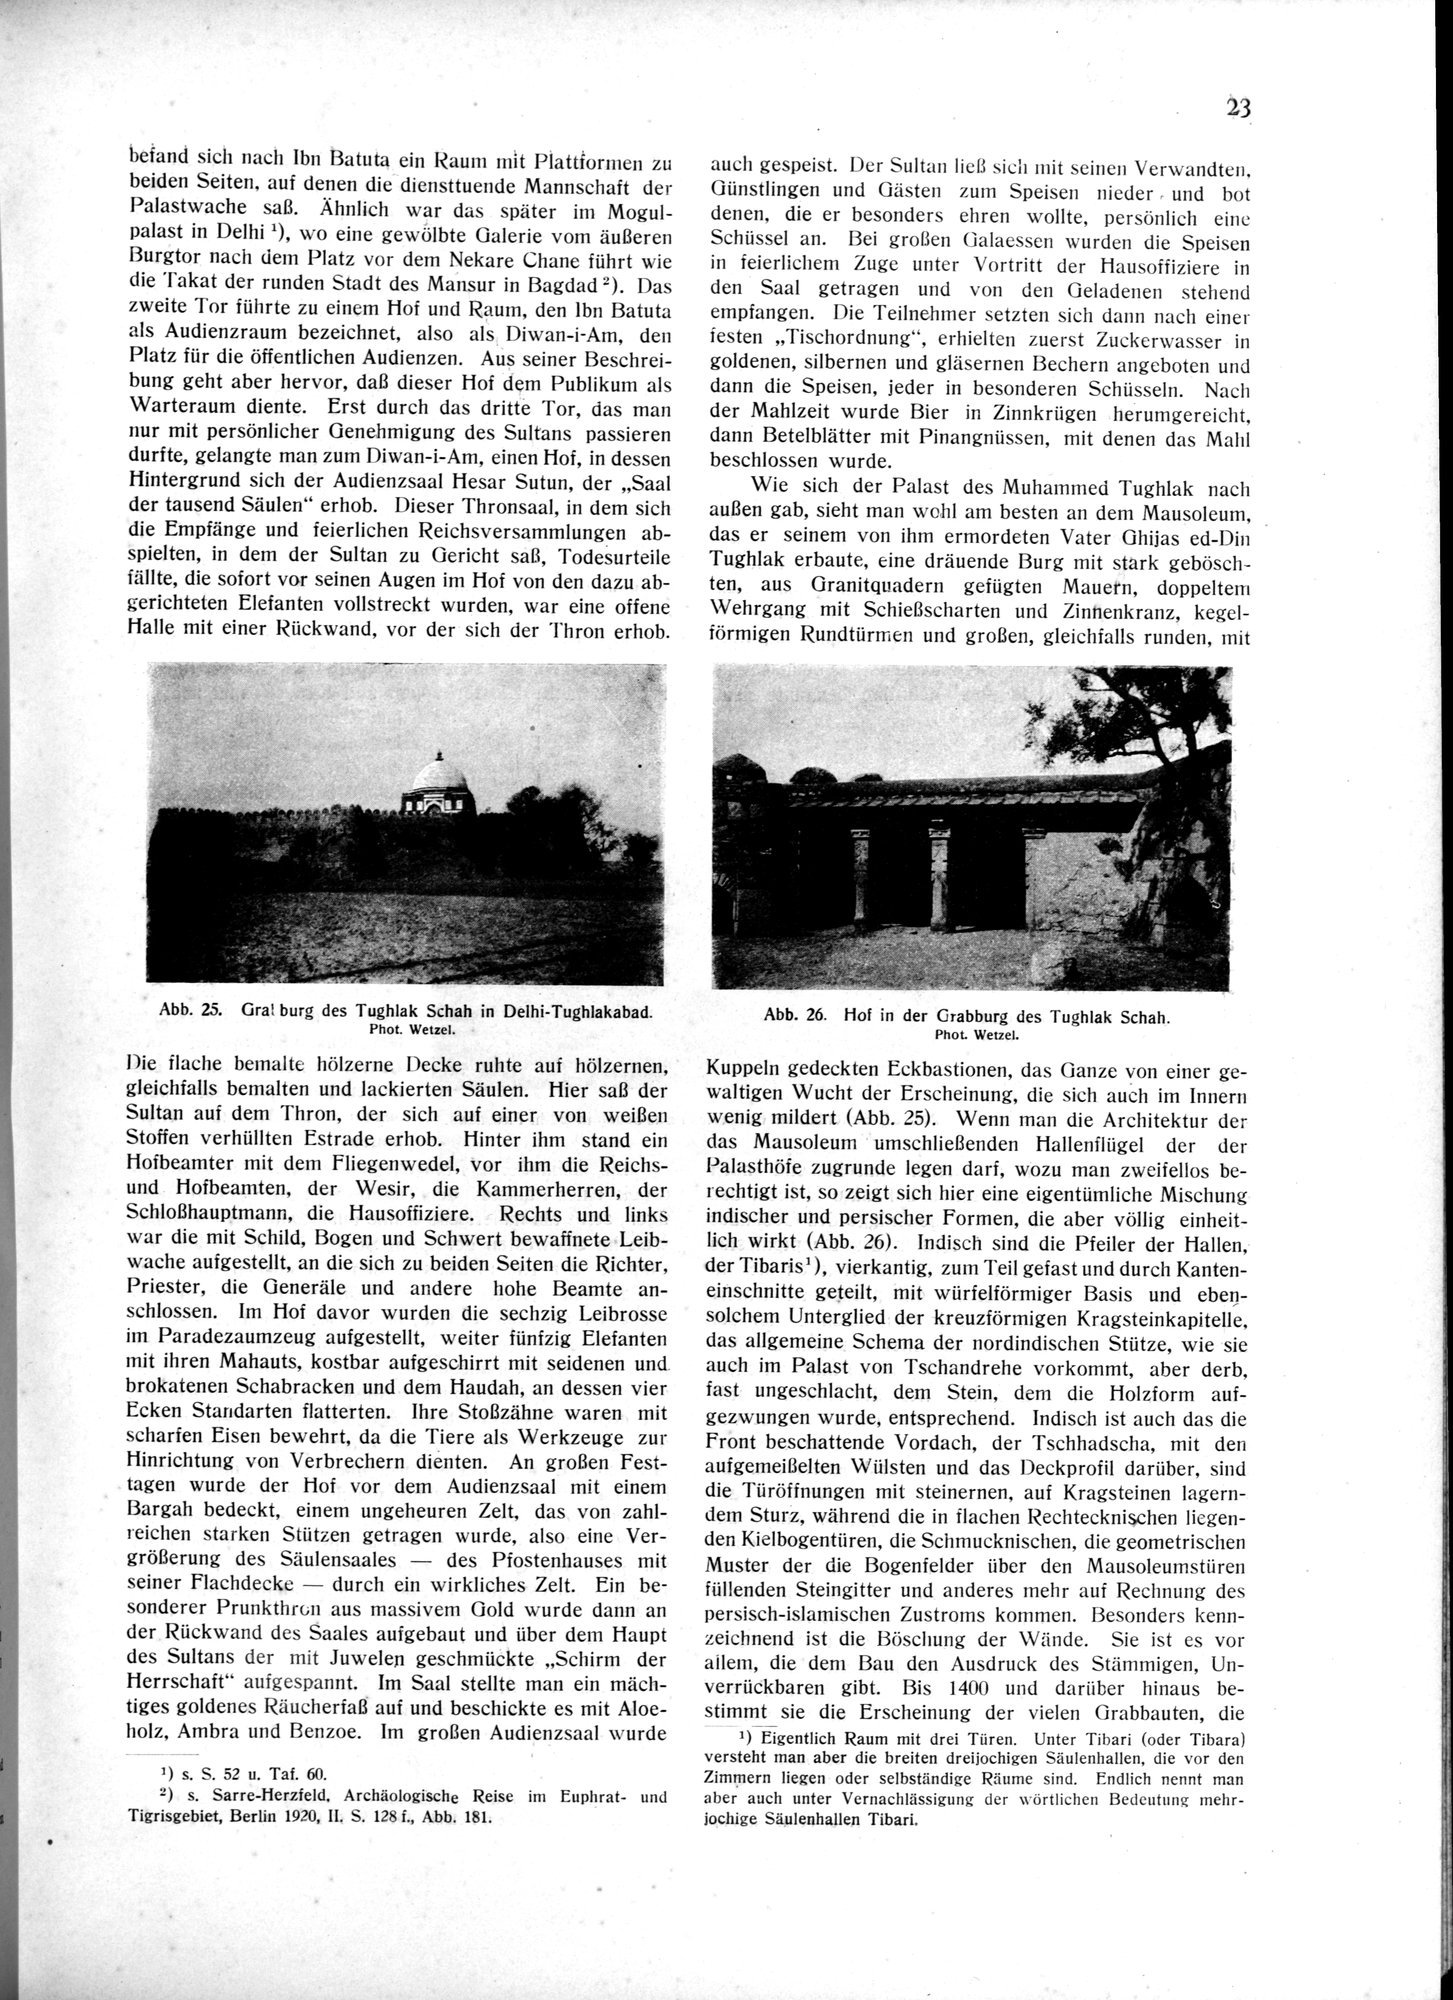 Indische Palaste und Wohnhauser : vol.1 / Page 33 (Grayscale High Resolution Image)